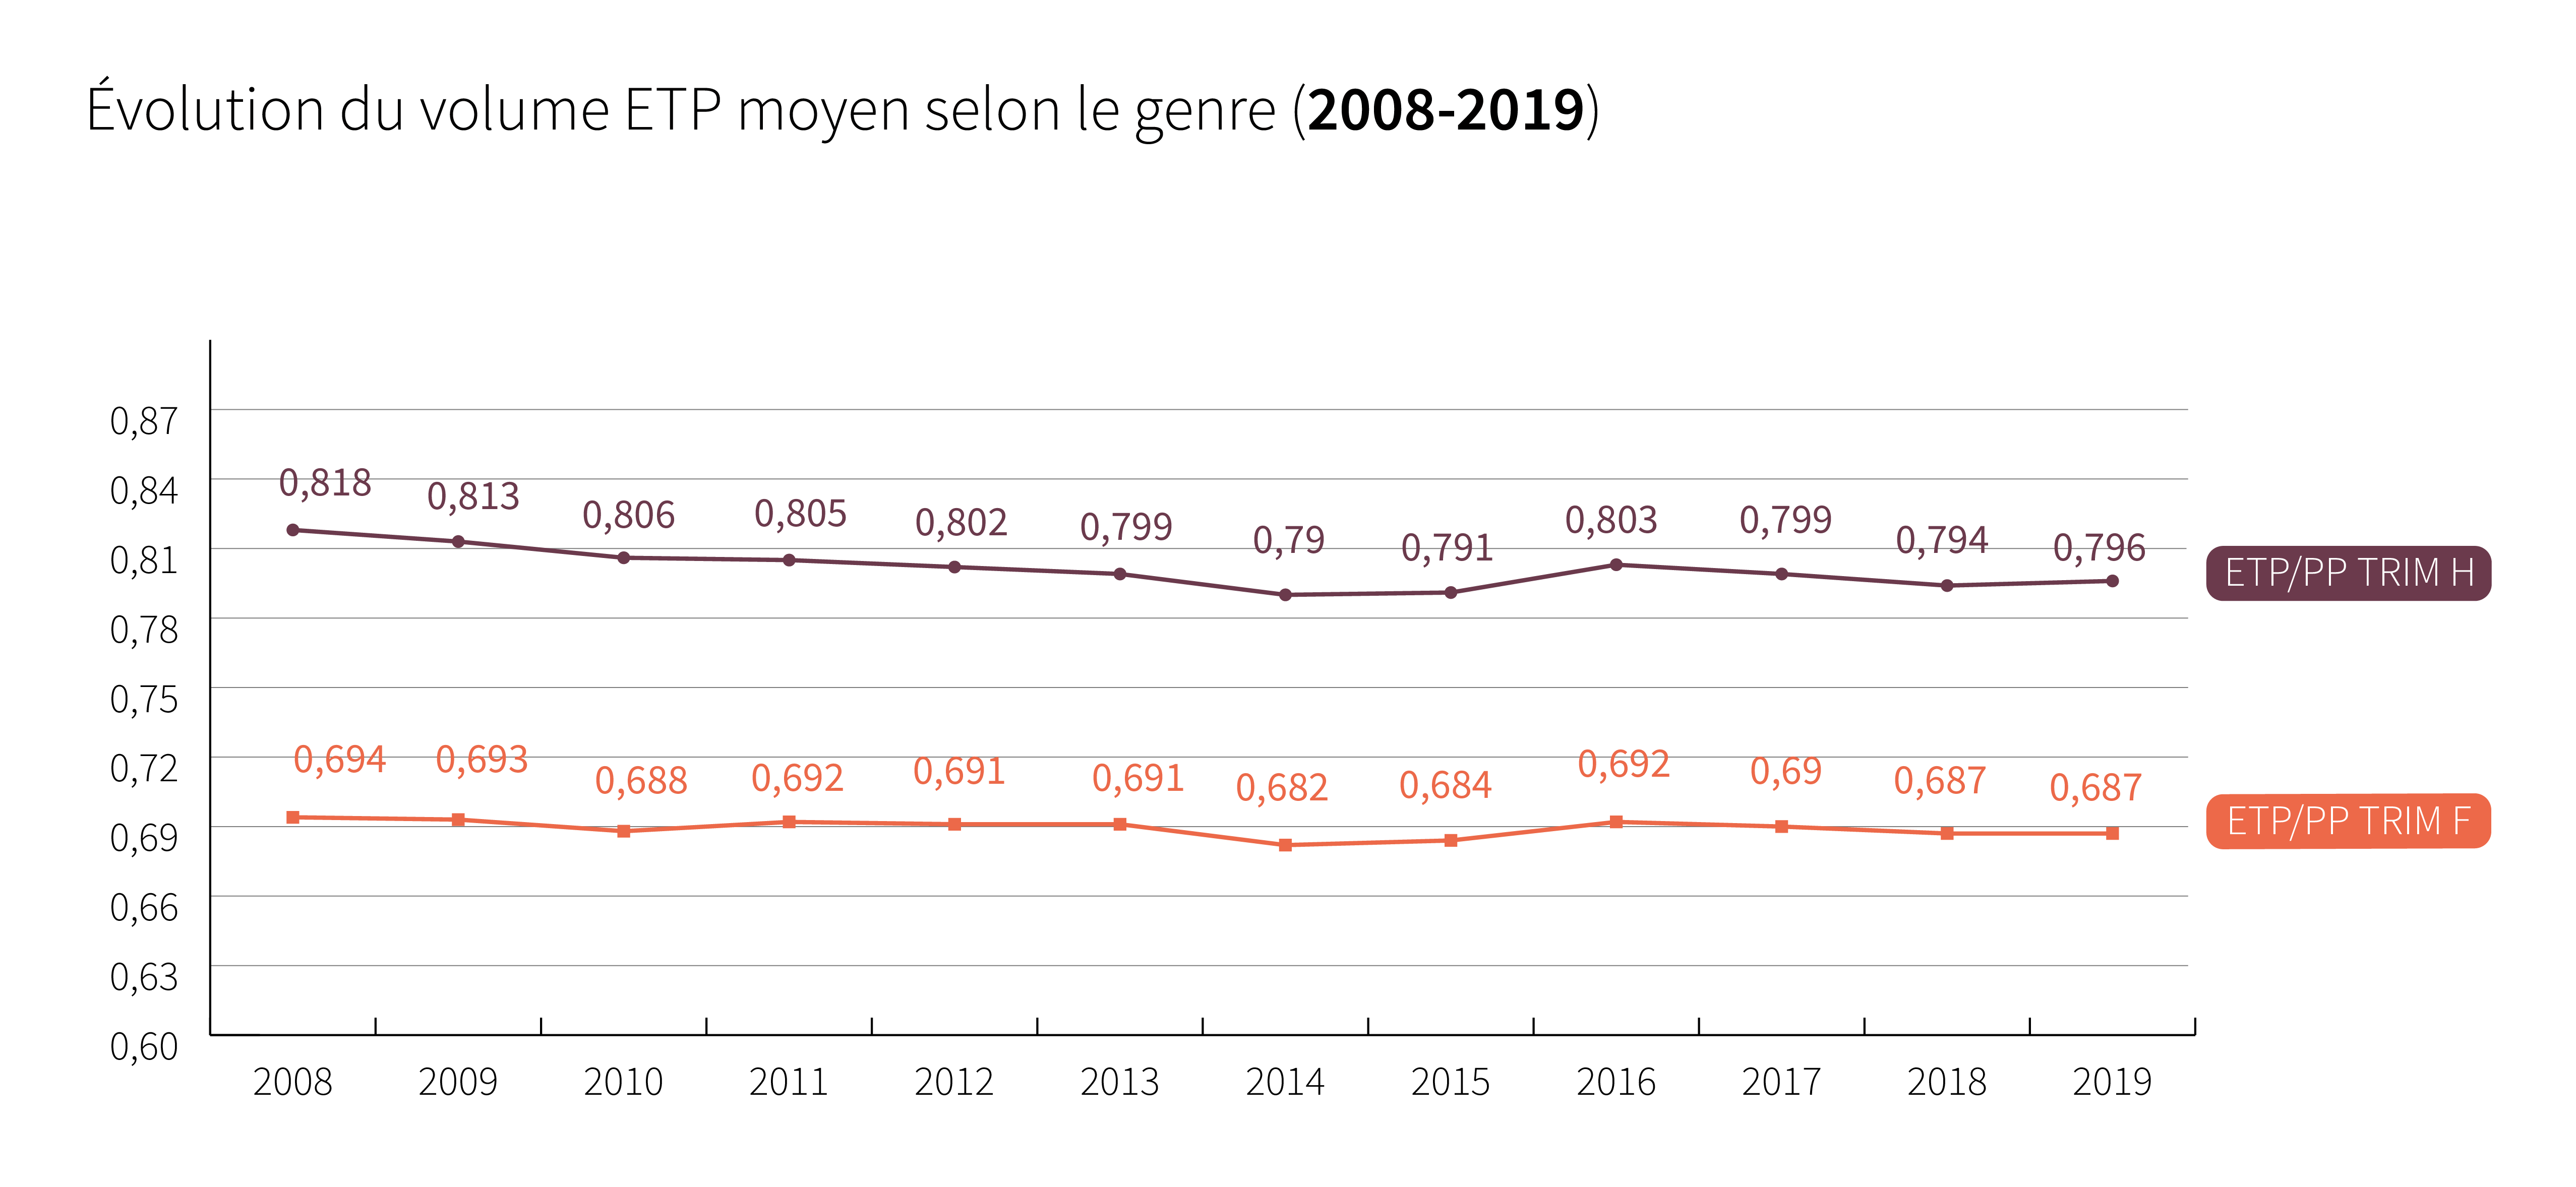 Evolution du volume ETP moyen selon le genre (2008-2019) - Cliquez pour agrandir